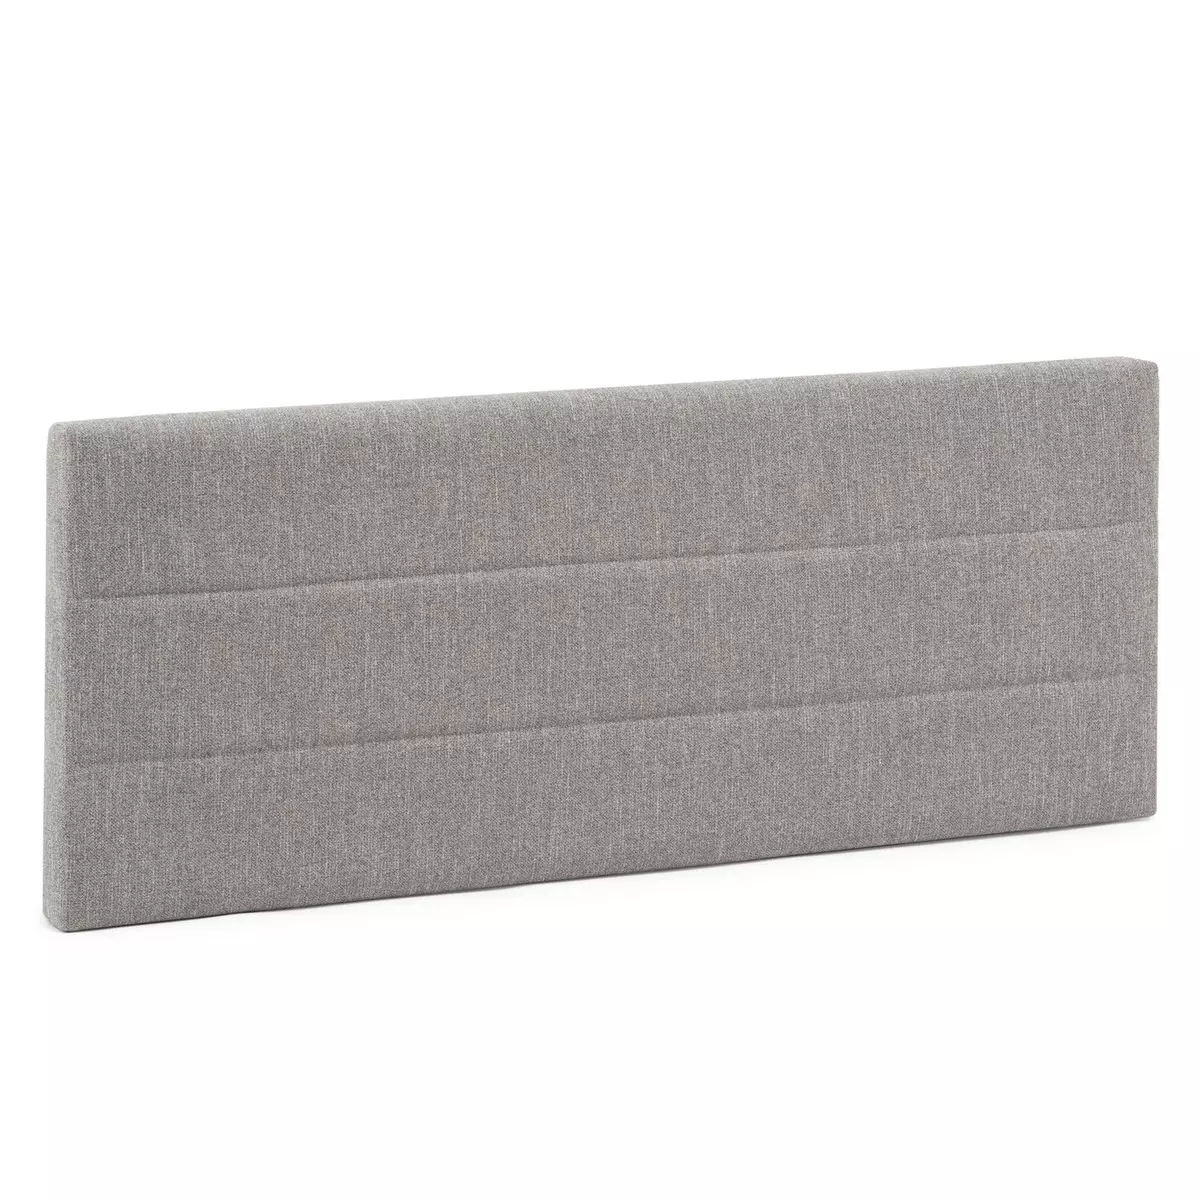 MARCKONFORT Tête de lit tapissée Miconos 150x60 cm Couleur Gris, 8 cm d'épaisseur